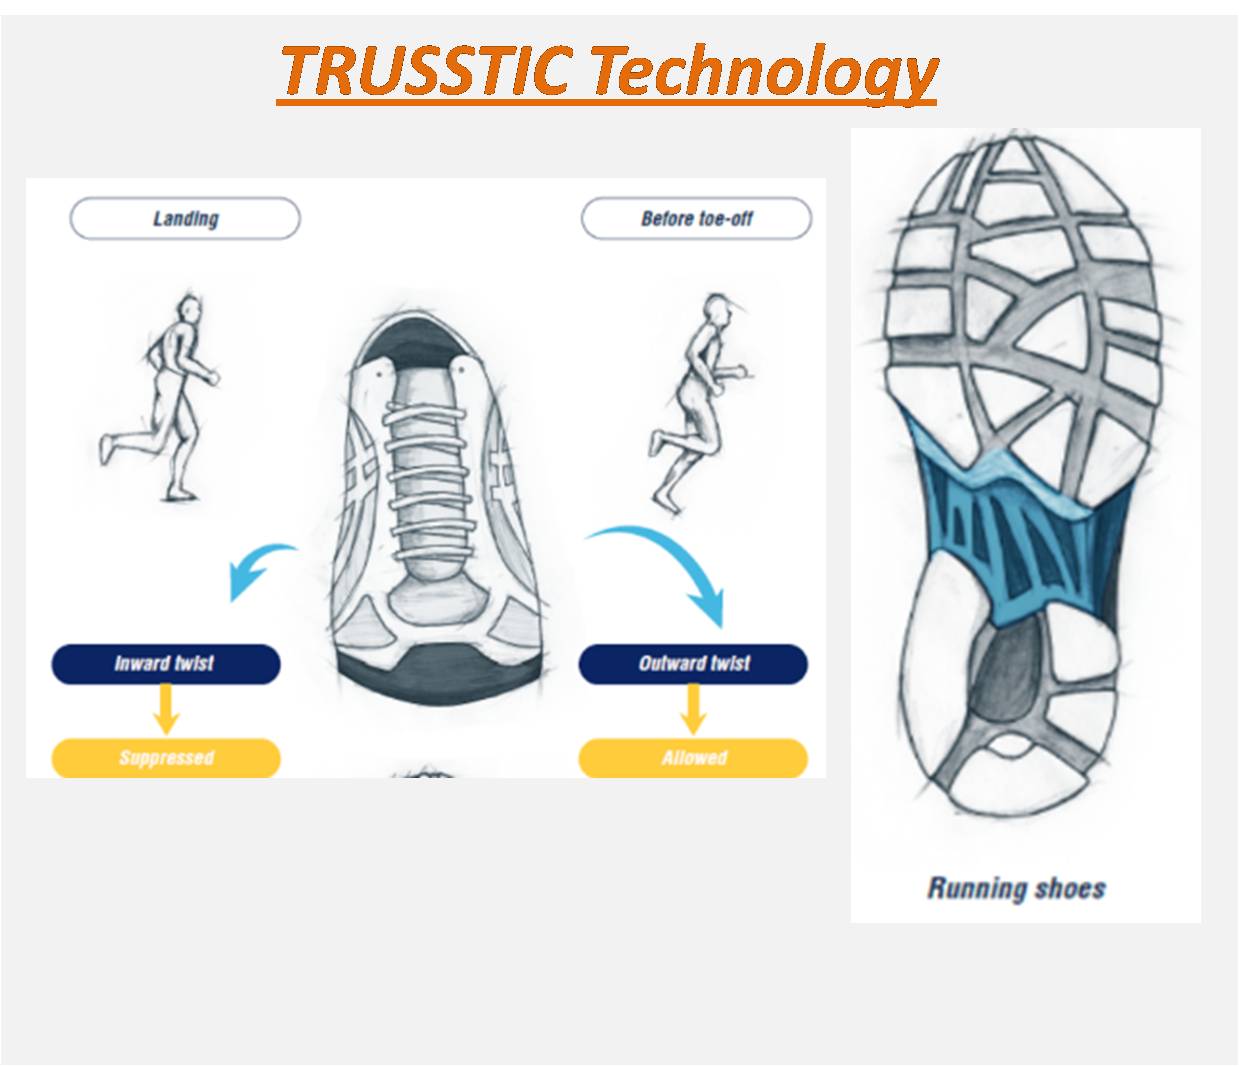 Asics_Badminton_footwear_shoe_Truesstic_Technology